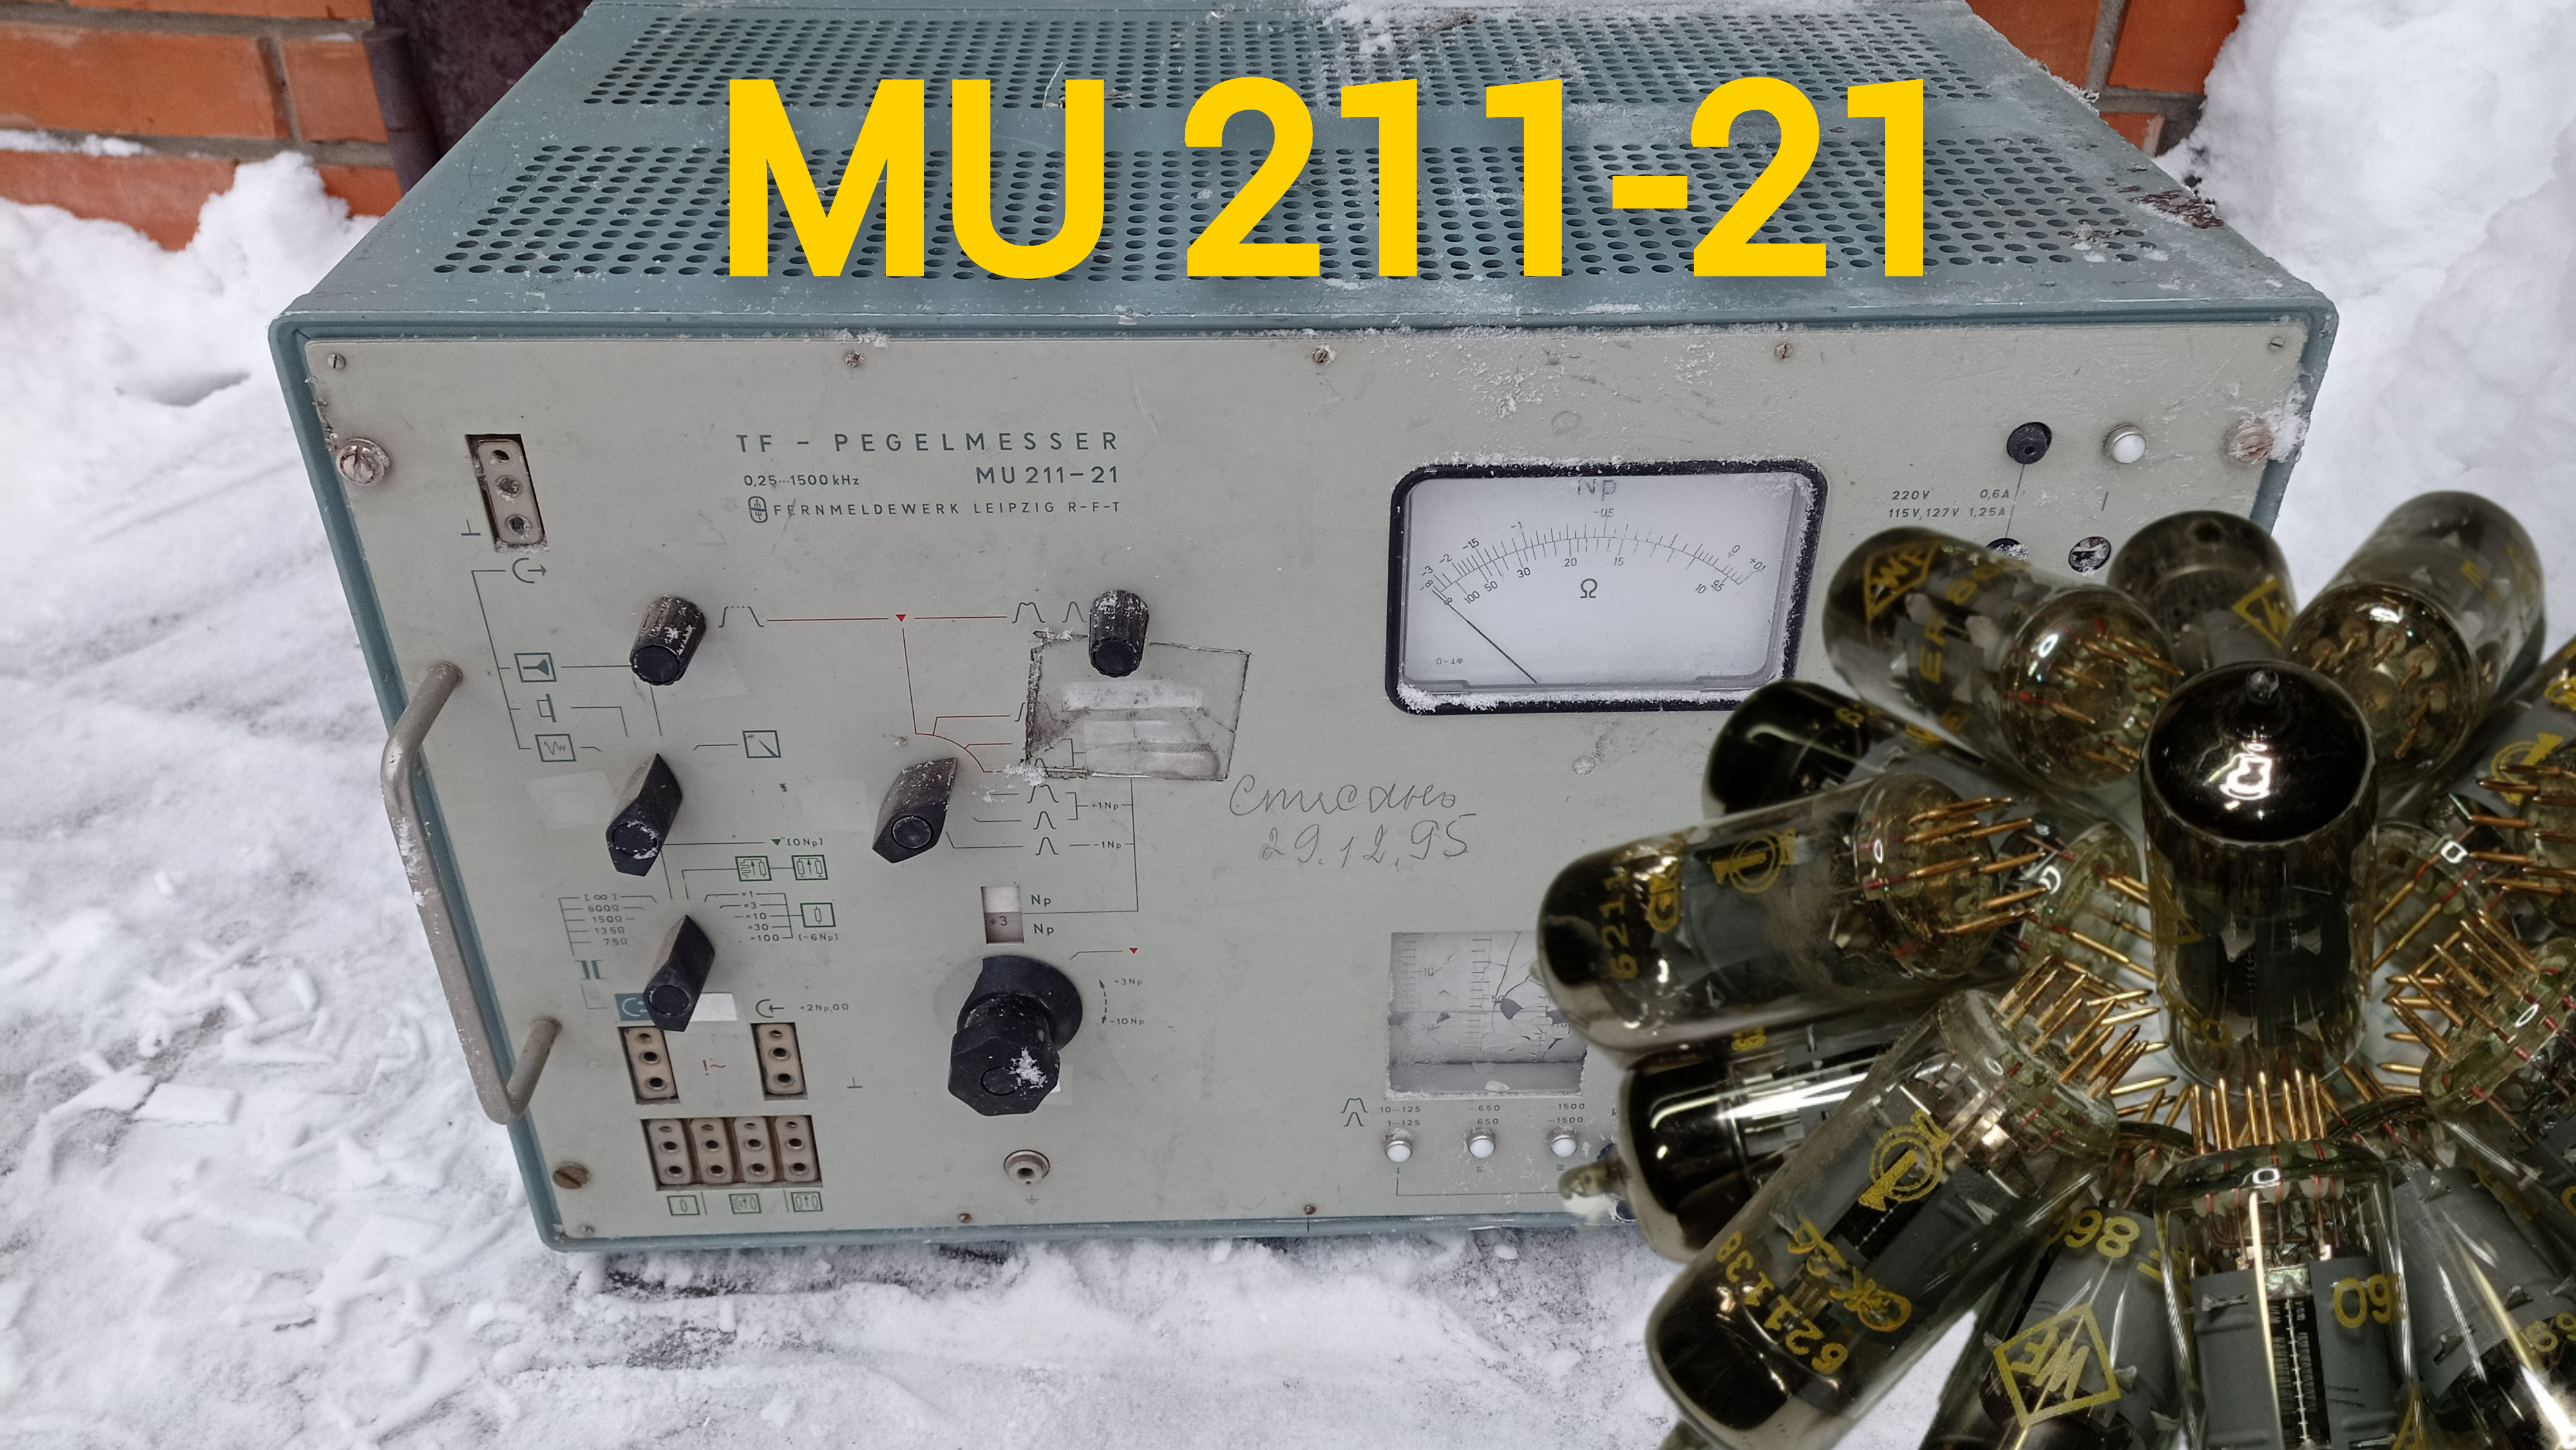 Генератор производства ГДР MU 211-21. Радиодетали, палладий, золото, платина, серебро.